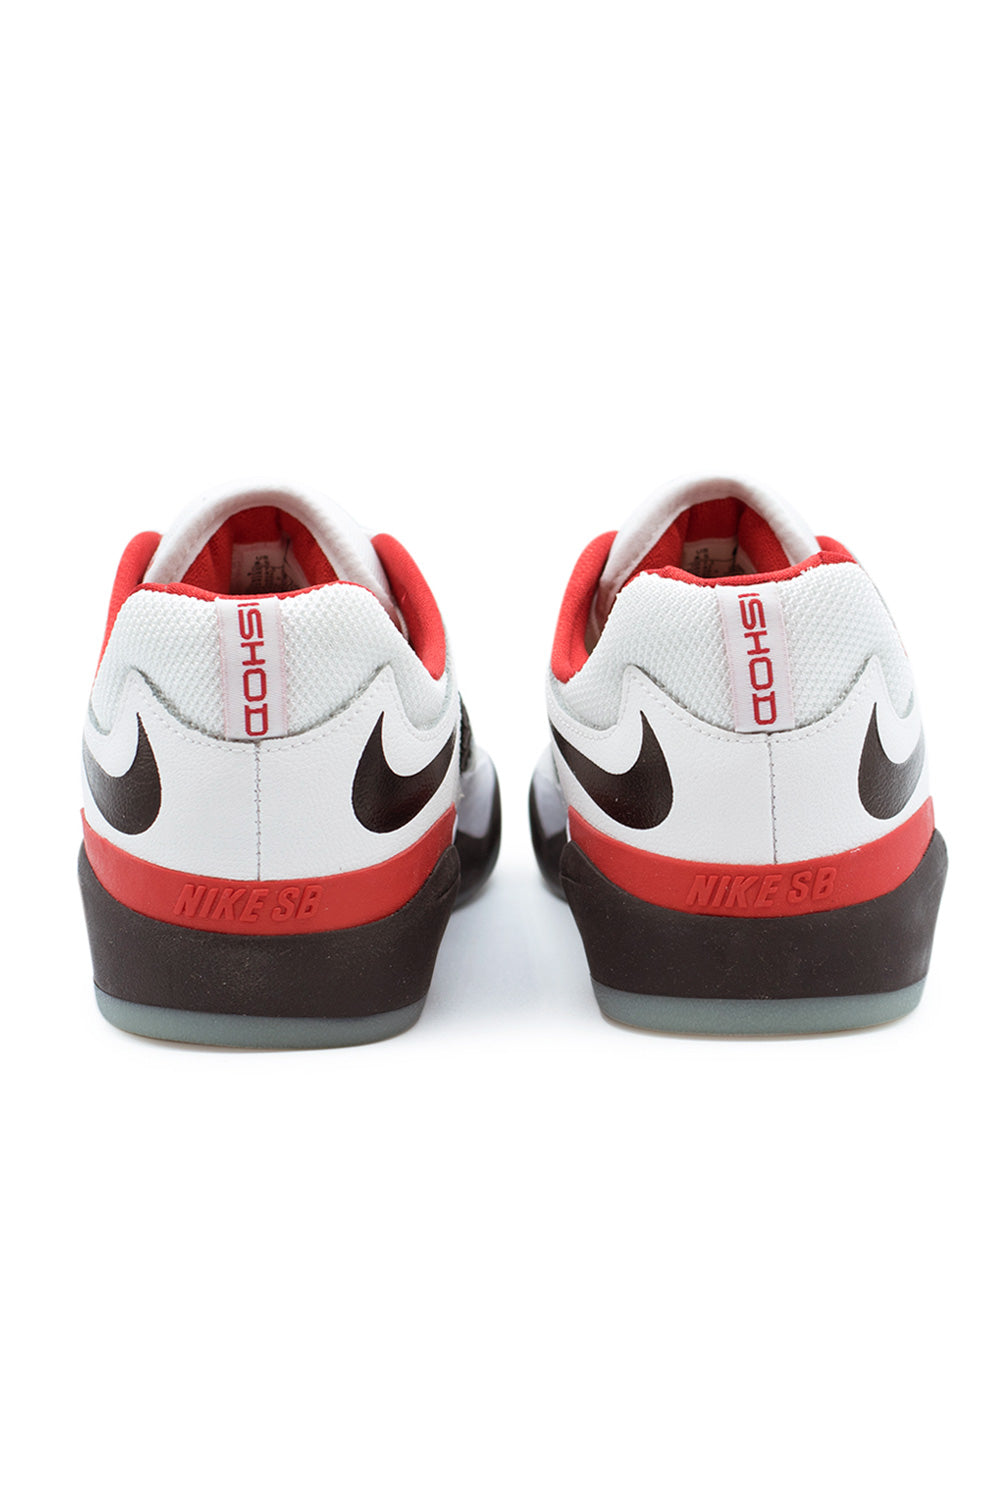 Nike SB Ishod PRM Shoe White / Black / University Red - BONKERS